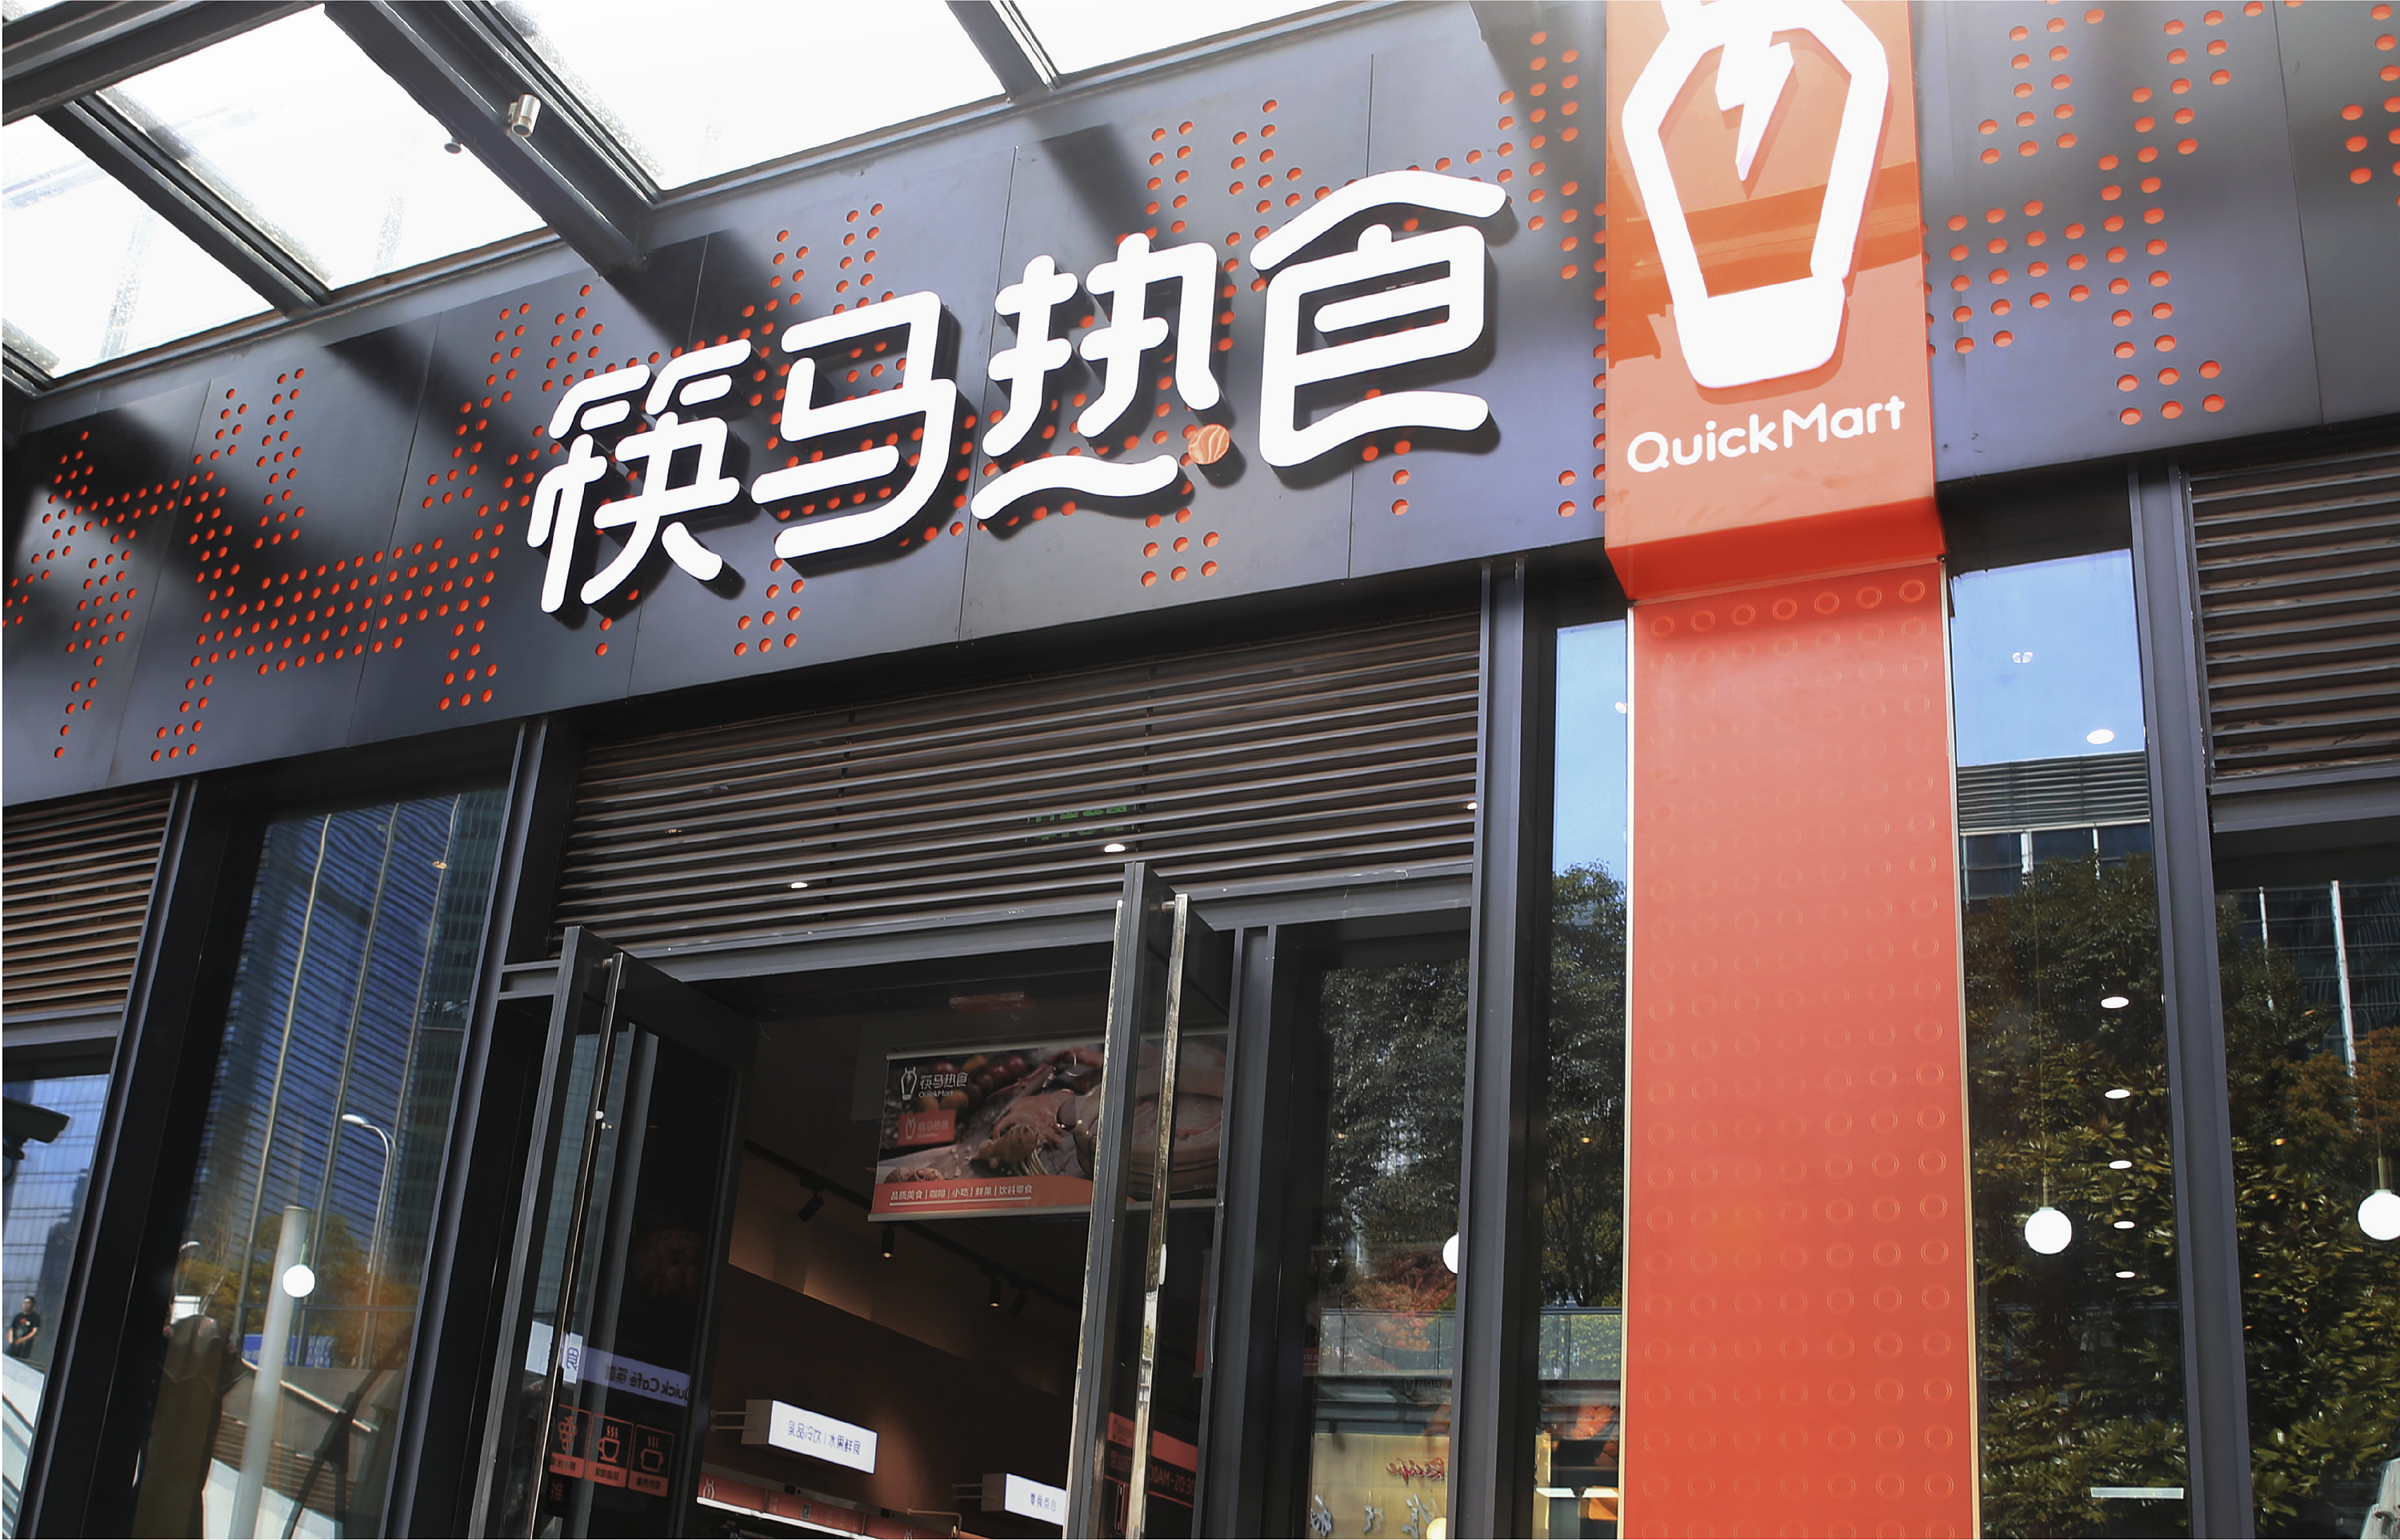 新餐饮概念店--筷马热食